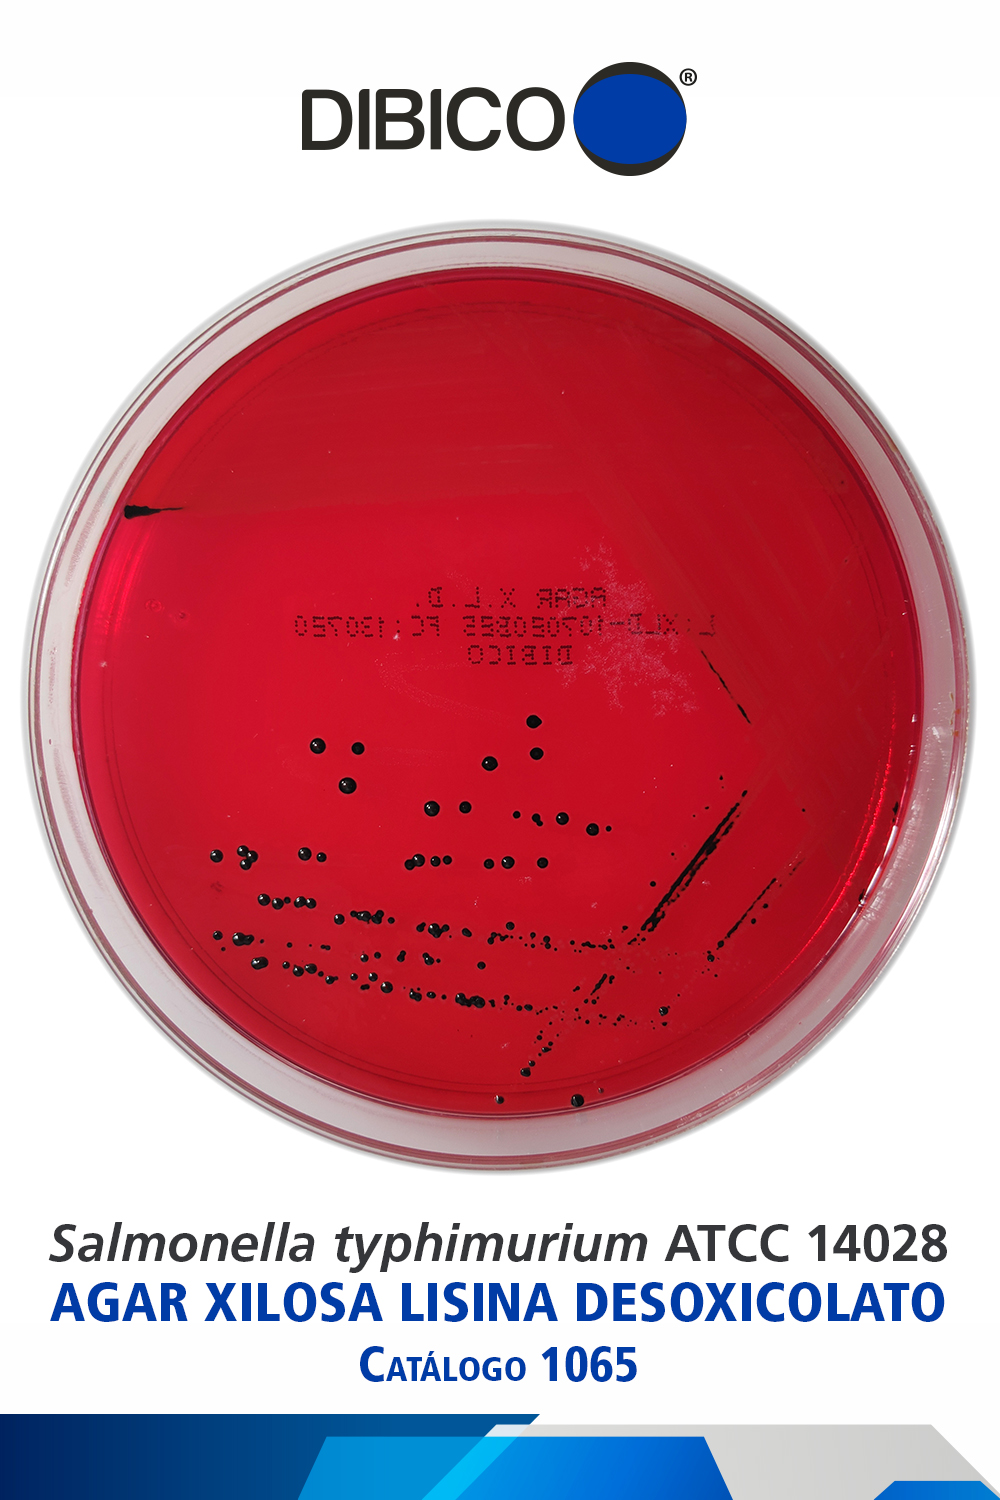 Salmonella typhimurium ATCC 14028 Cat 1065